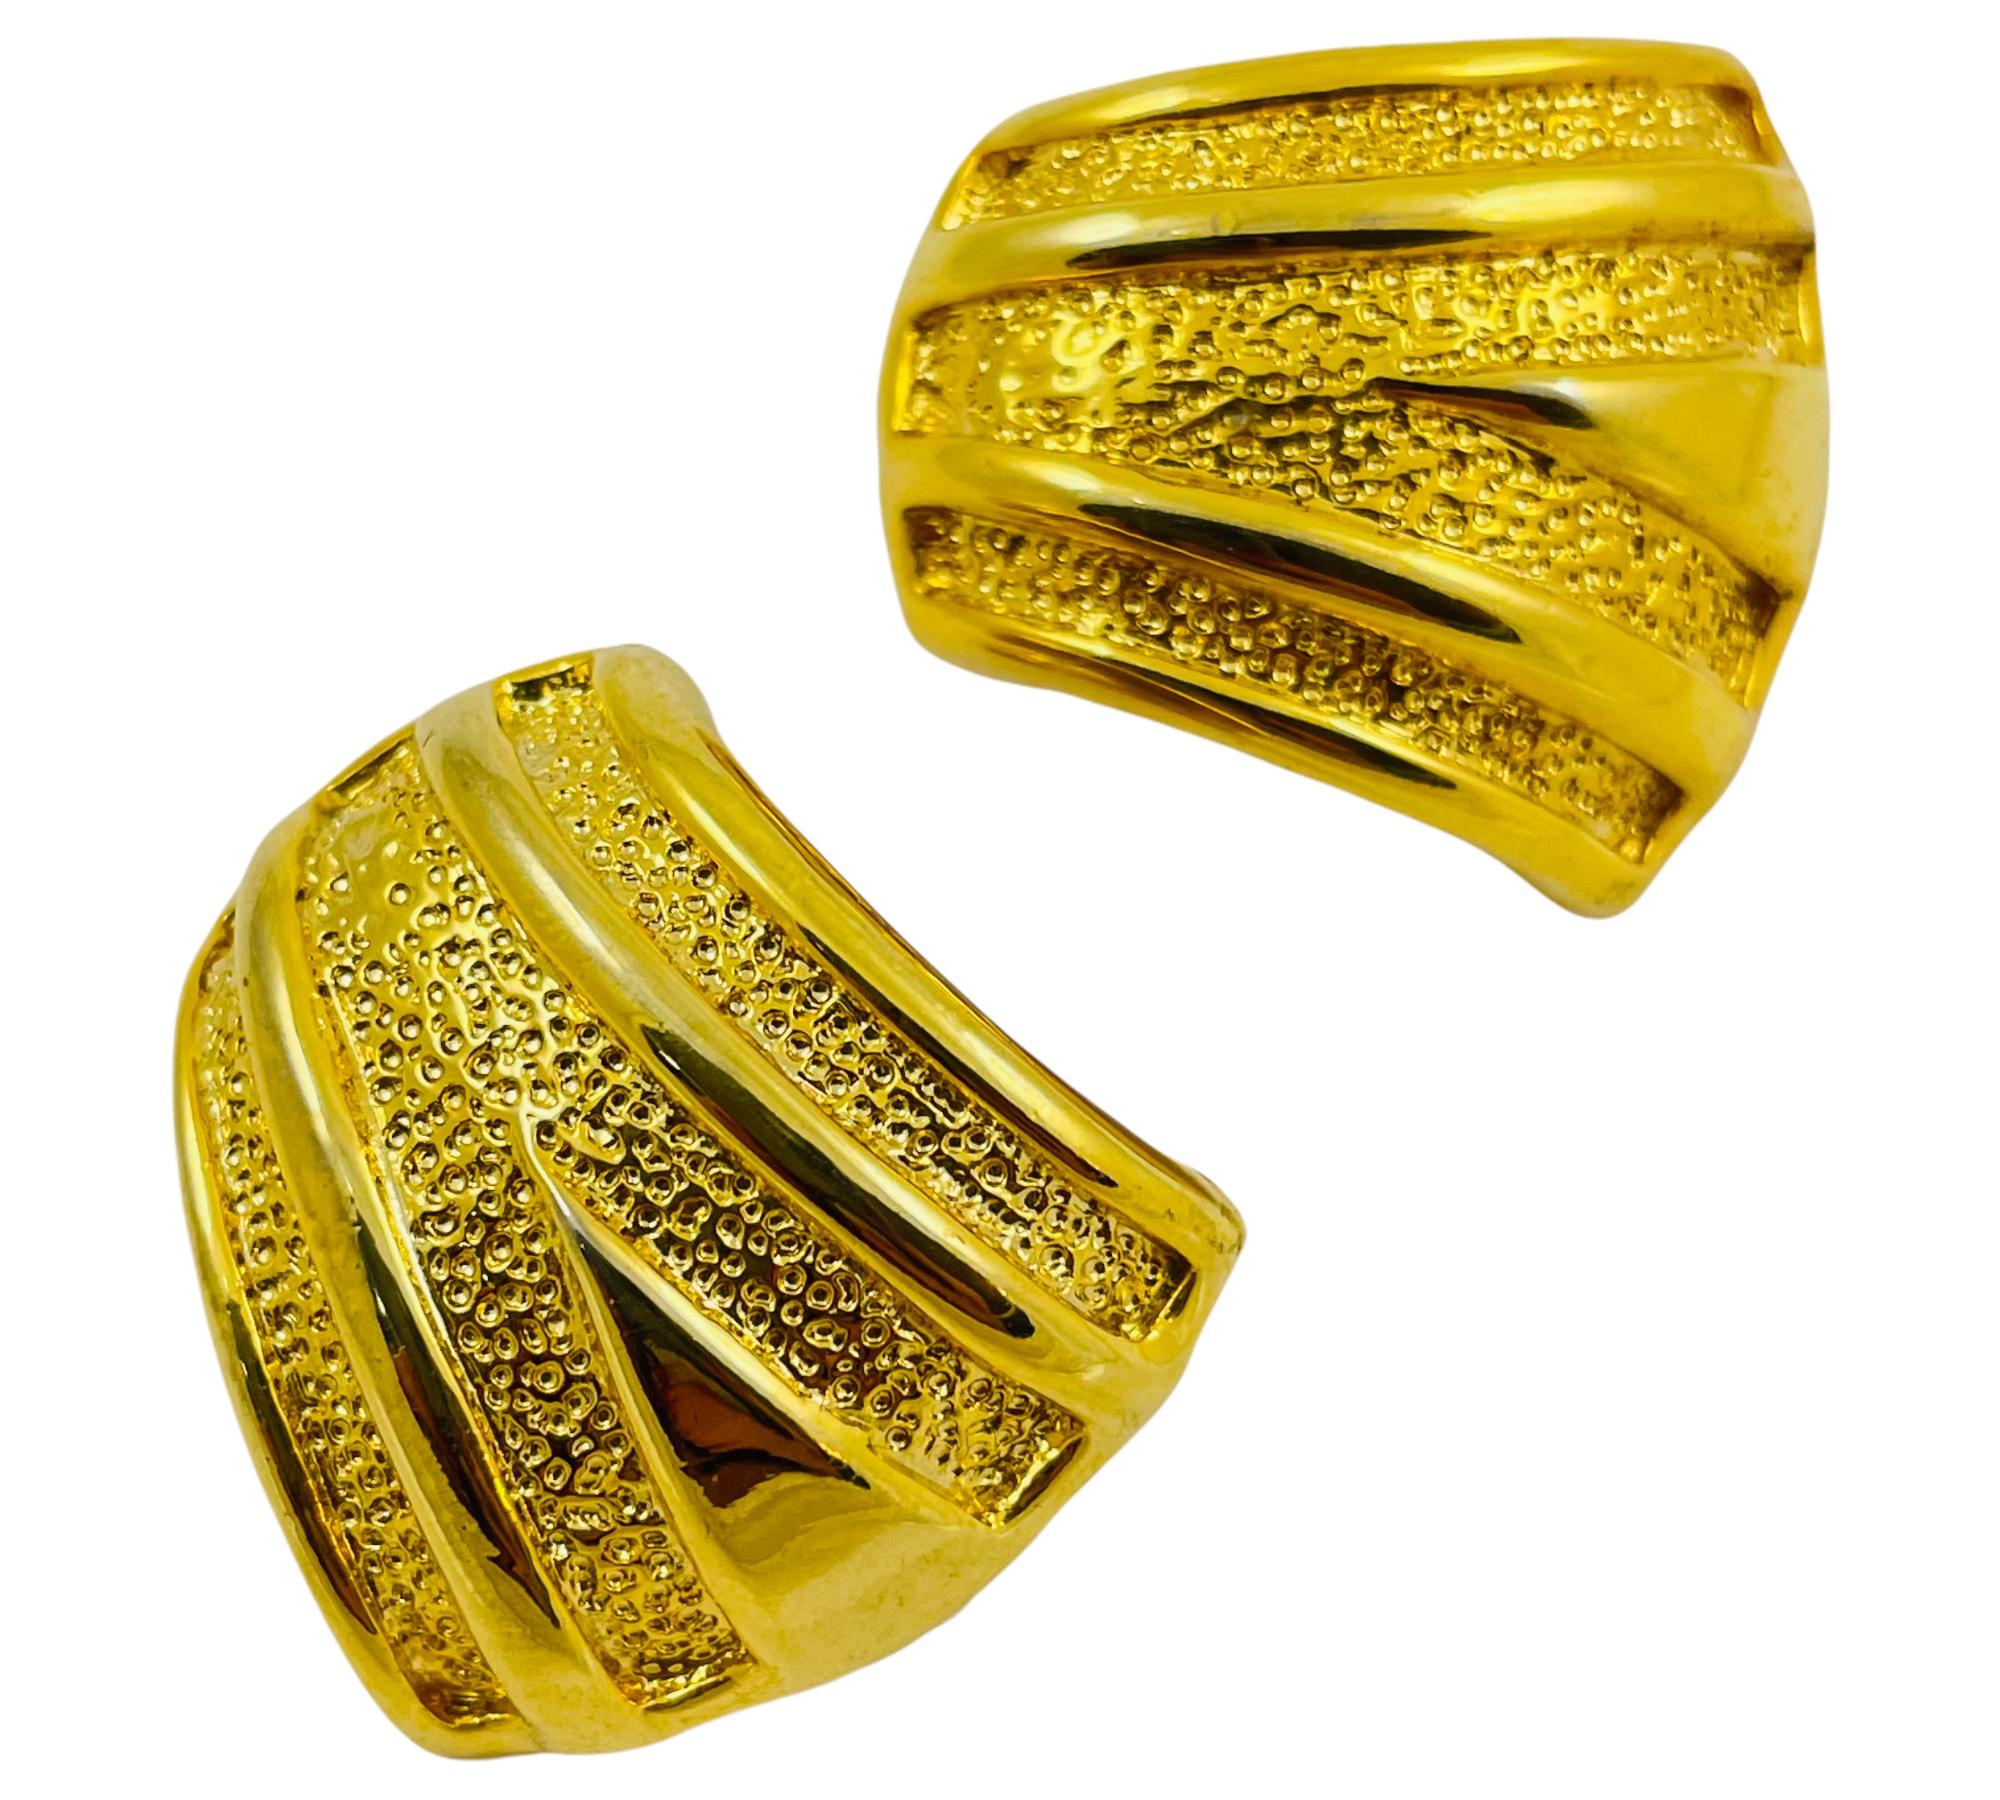 DETTAGLI

- senza segno

- tono oro  

- orecchini vintage di design da passerella

MISURE  

- 1